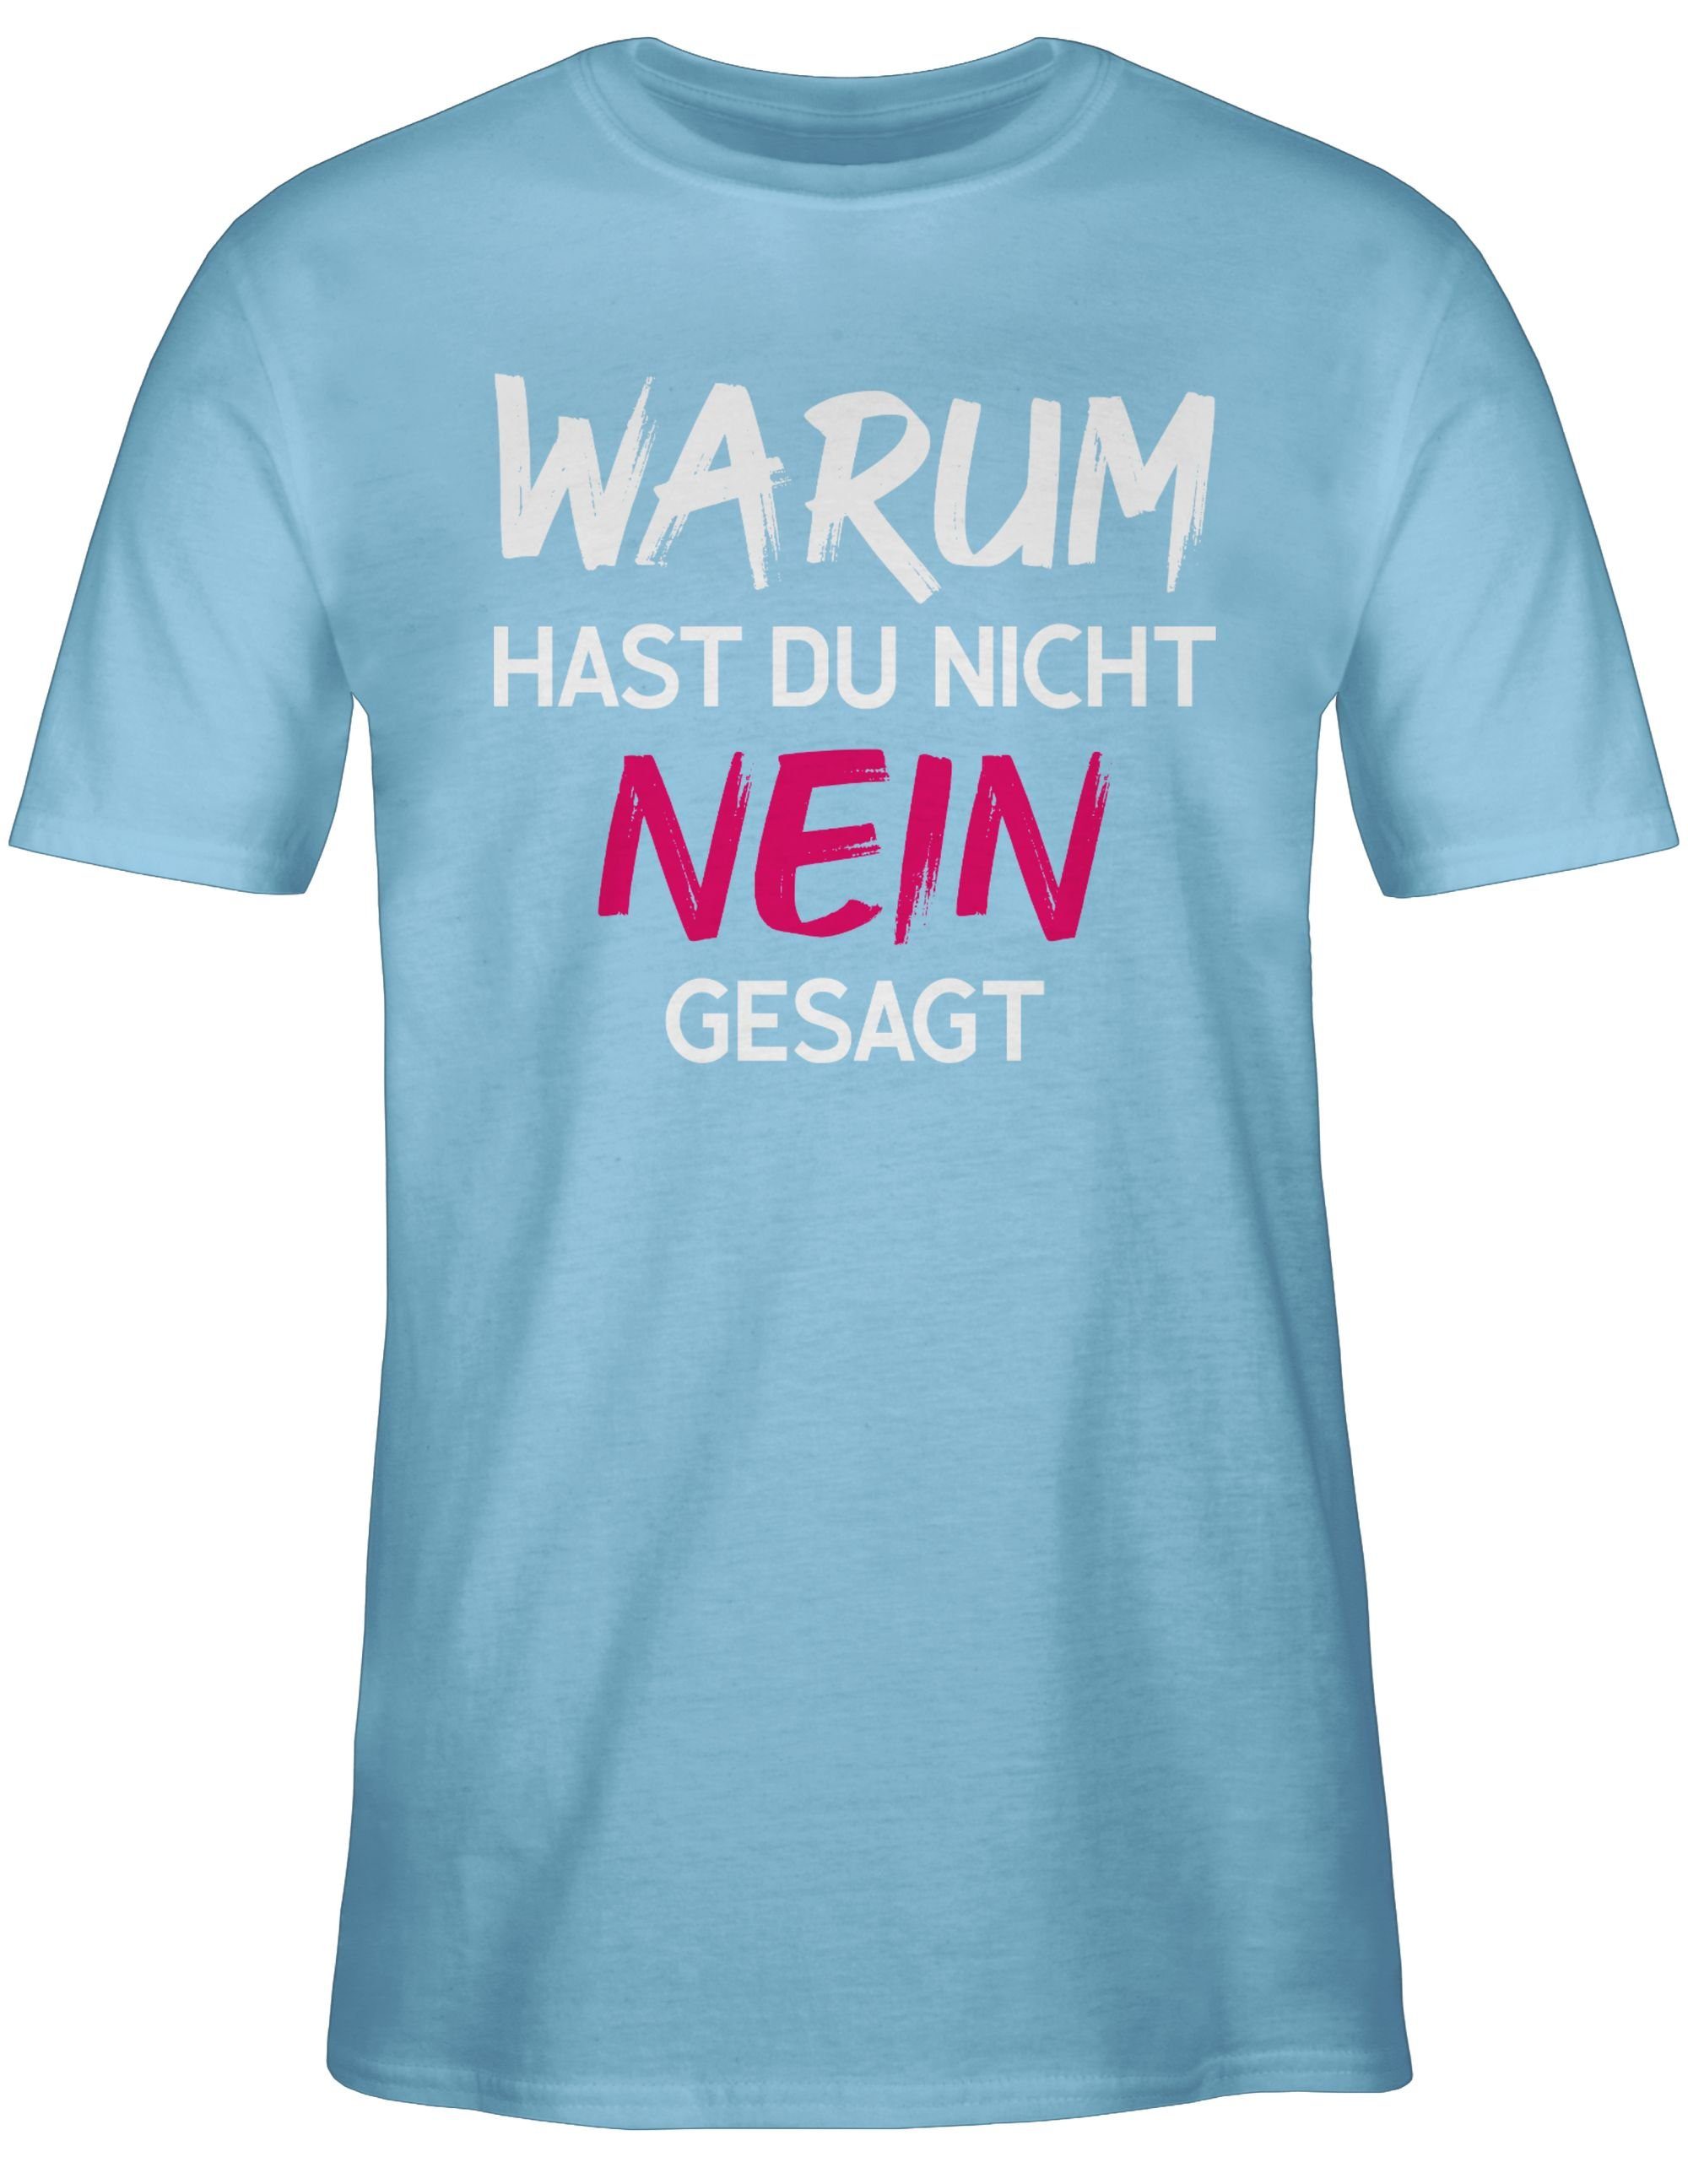 Shirtracer T-Shirt Warum für hast du nicht nein gesagt Schlager Party Outfit 02 Hellblau